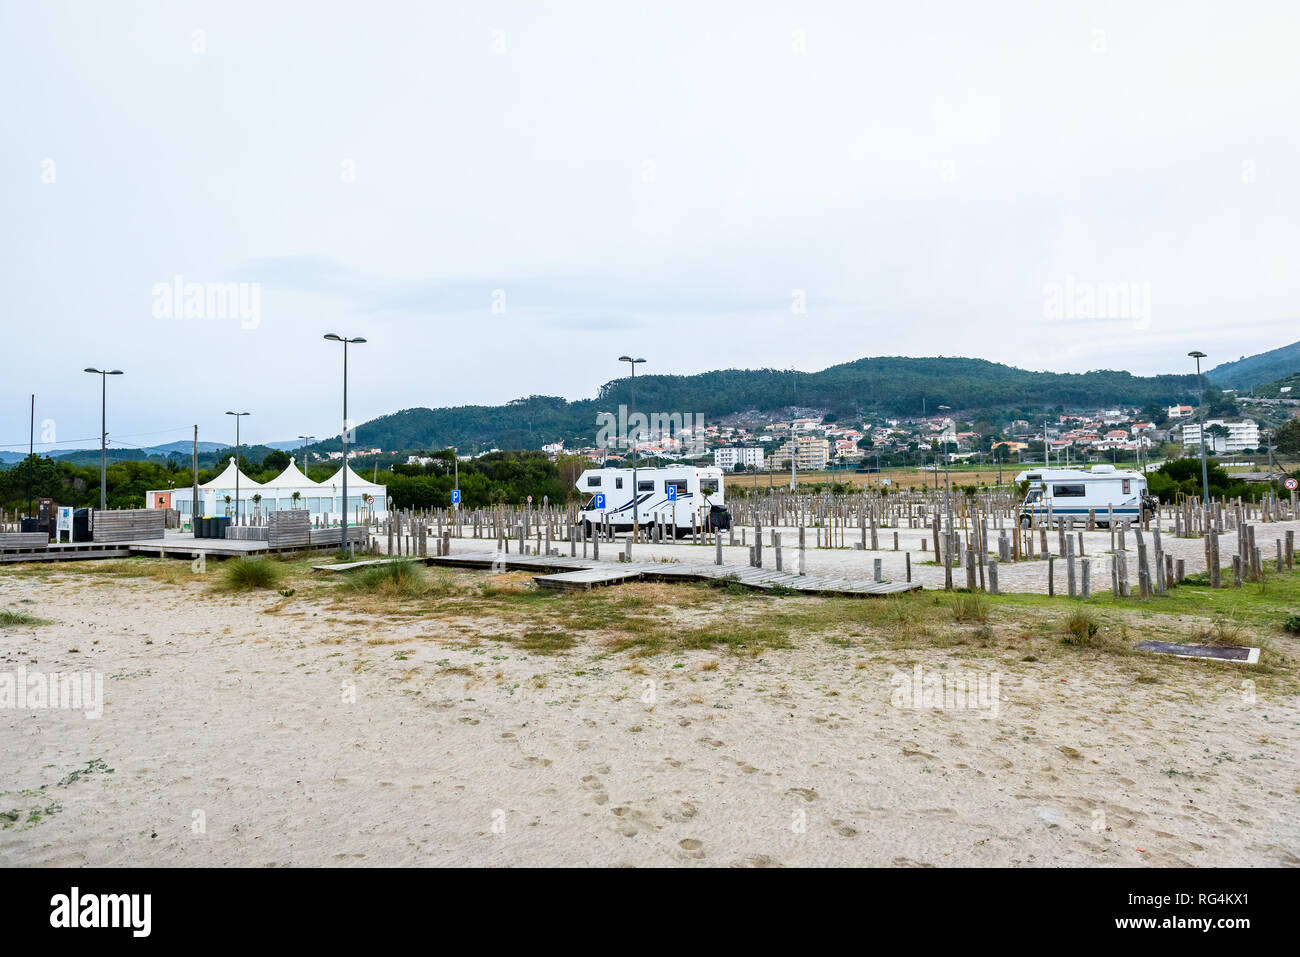 Parkplatz für Wohnmobile und Campervans in Afife Strand Portugal. Leer Freizeit Ort für Freizeit Fahrzeuge oder RVs am Sandstrand auf den Atla Stockfoto